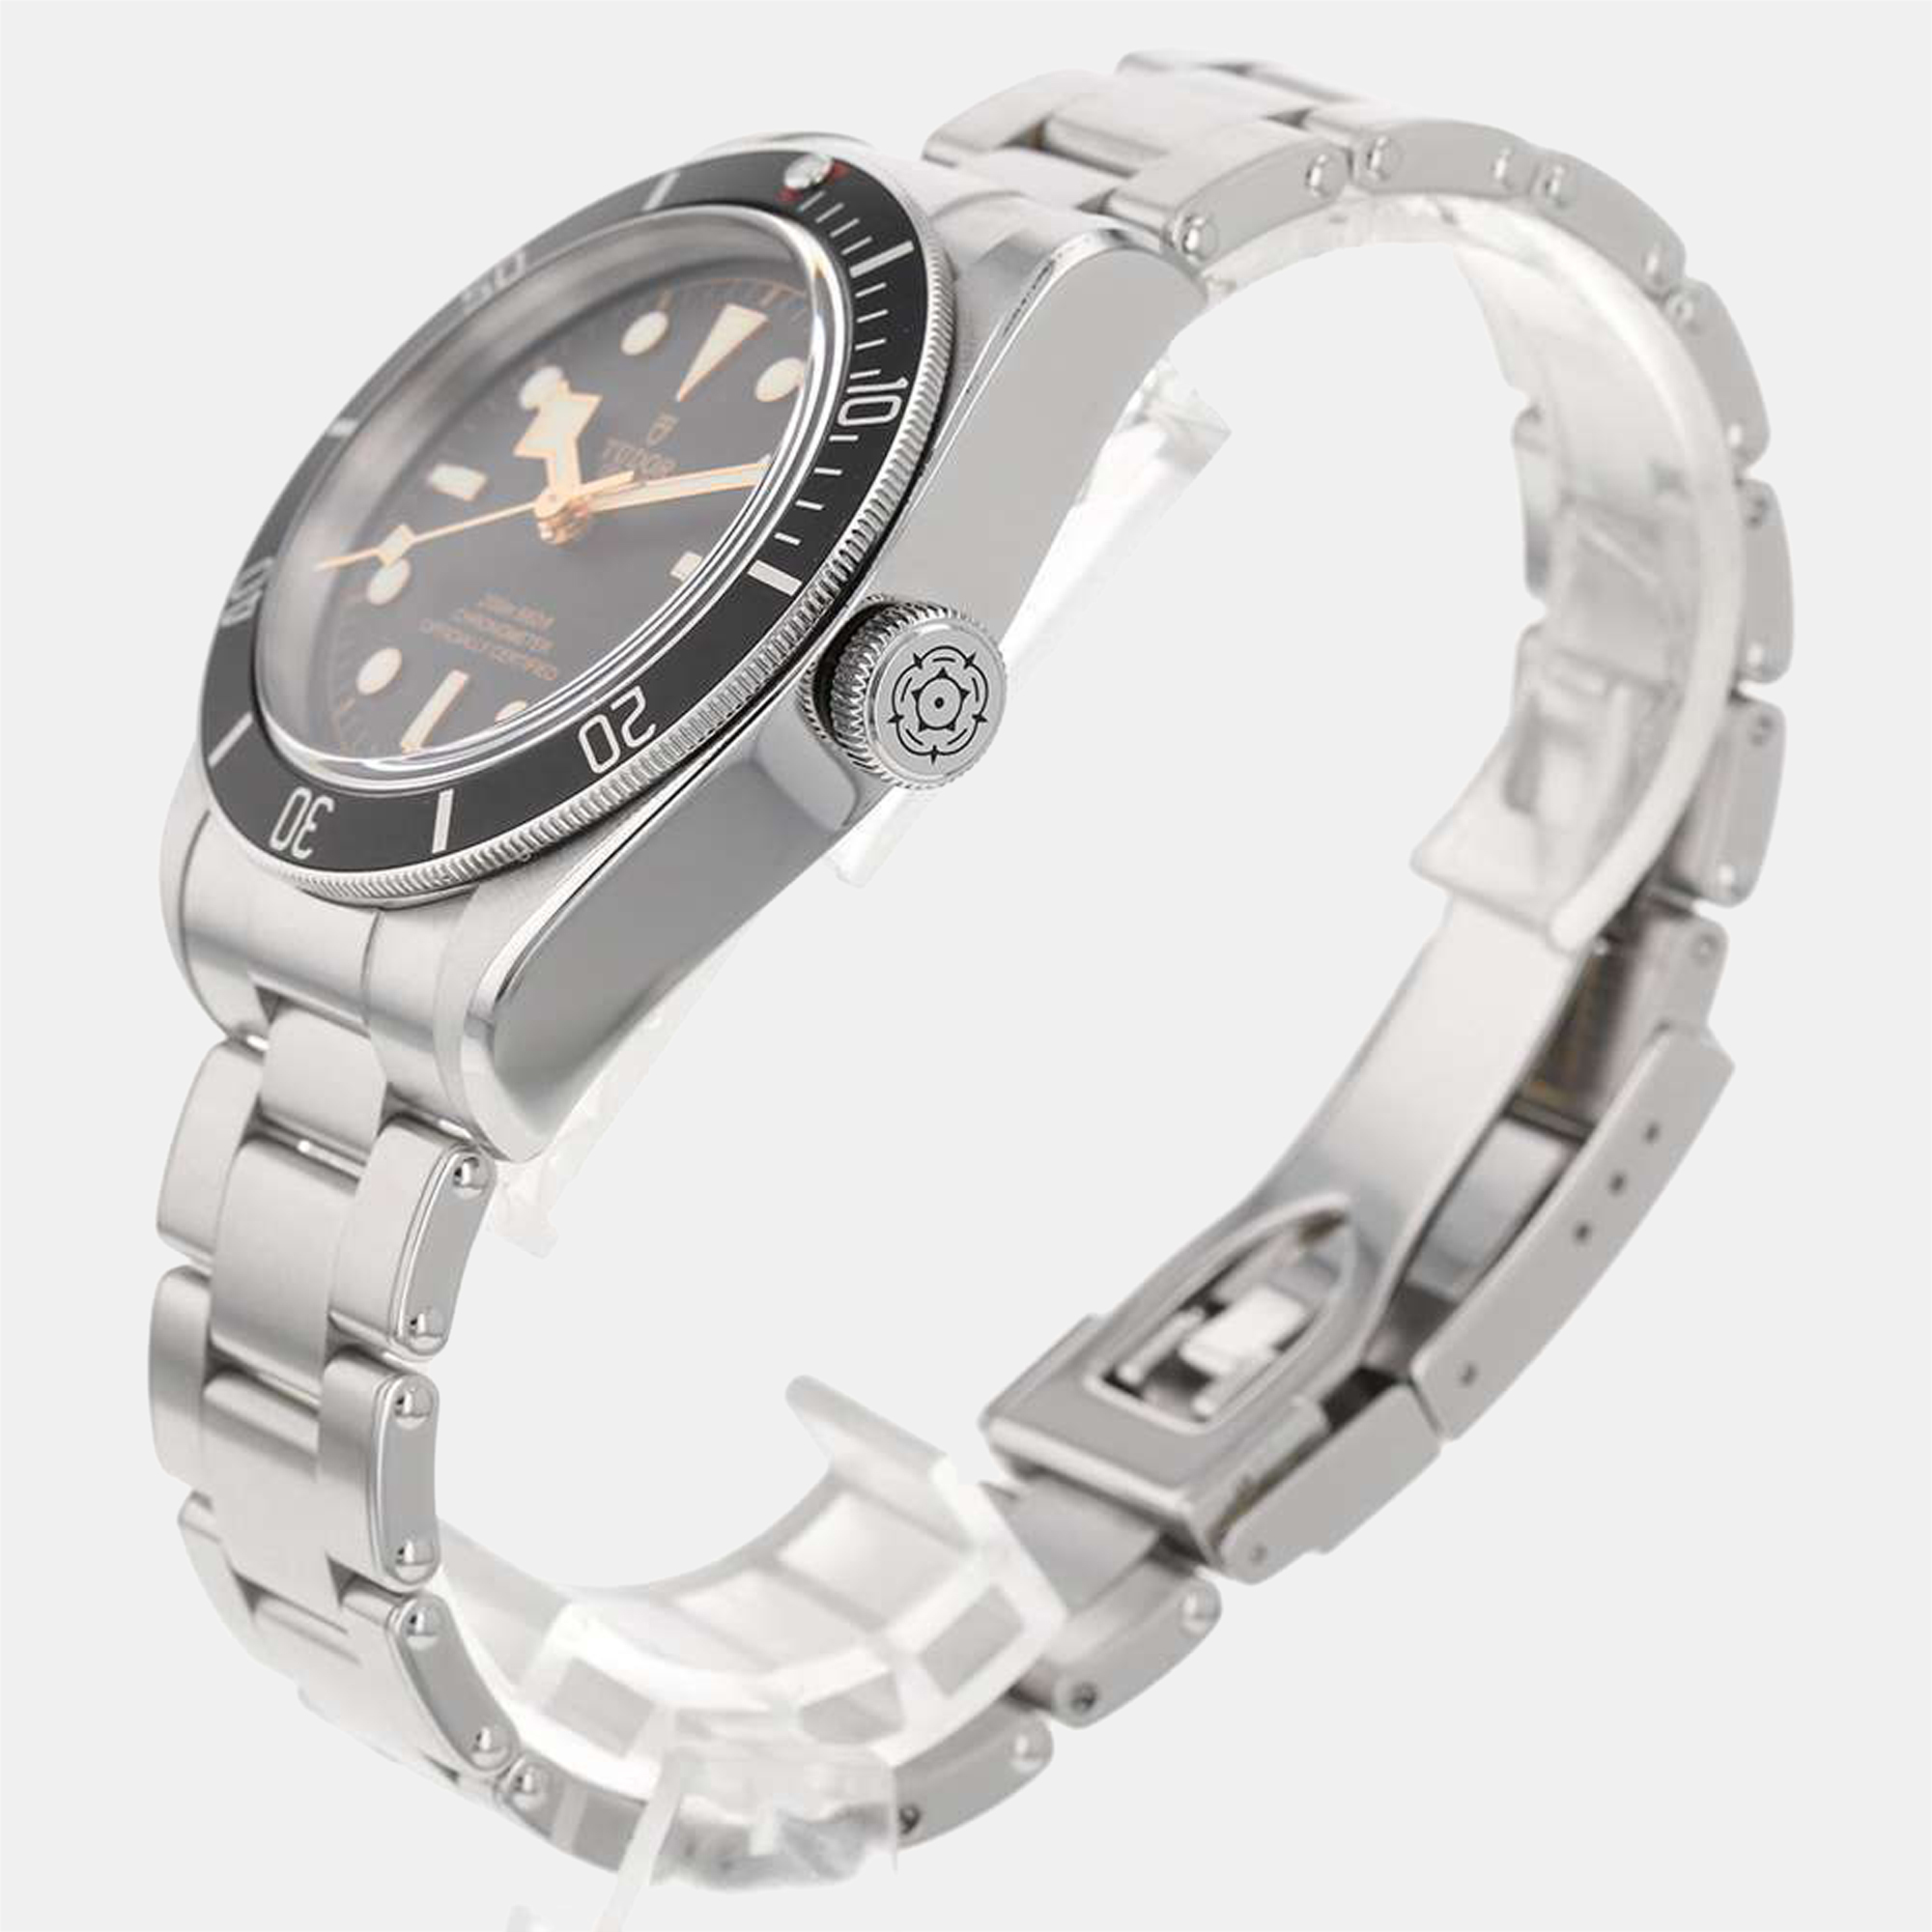 

Tudor Black Stainless Steel Black Bay 79230N Men's Wristwatch 41 mm